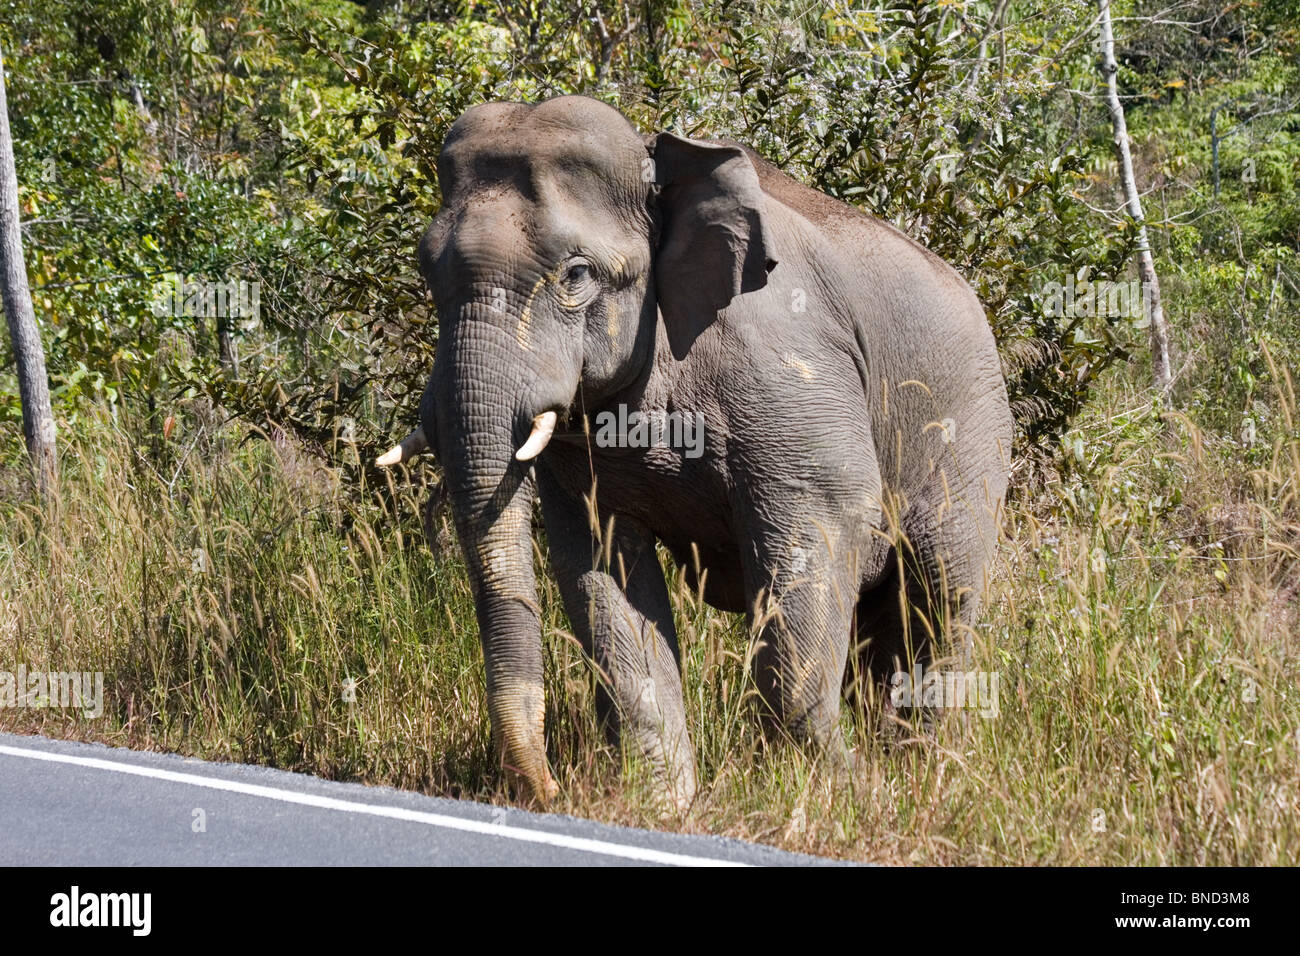 Wild bull elephant, Elephas maximus, Khao Yai National Park, Thailand Stock Photo